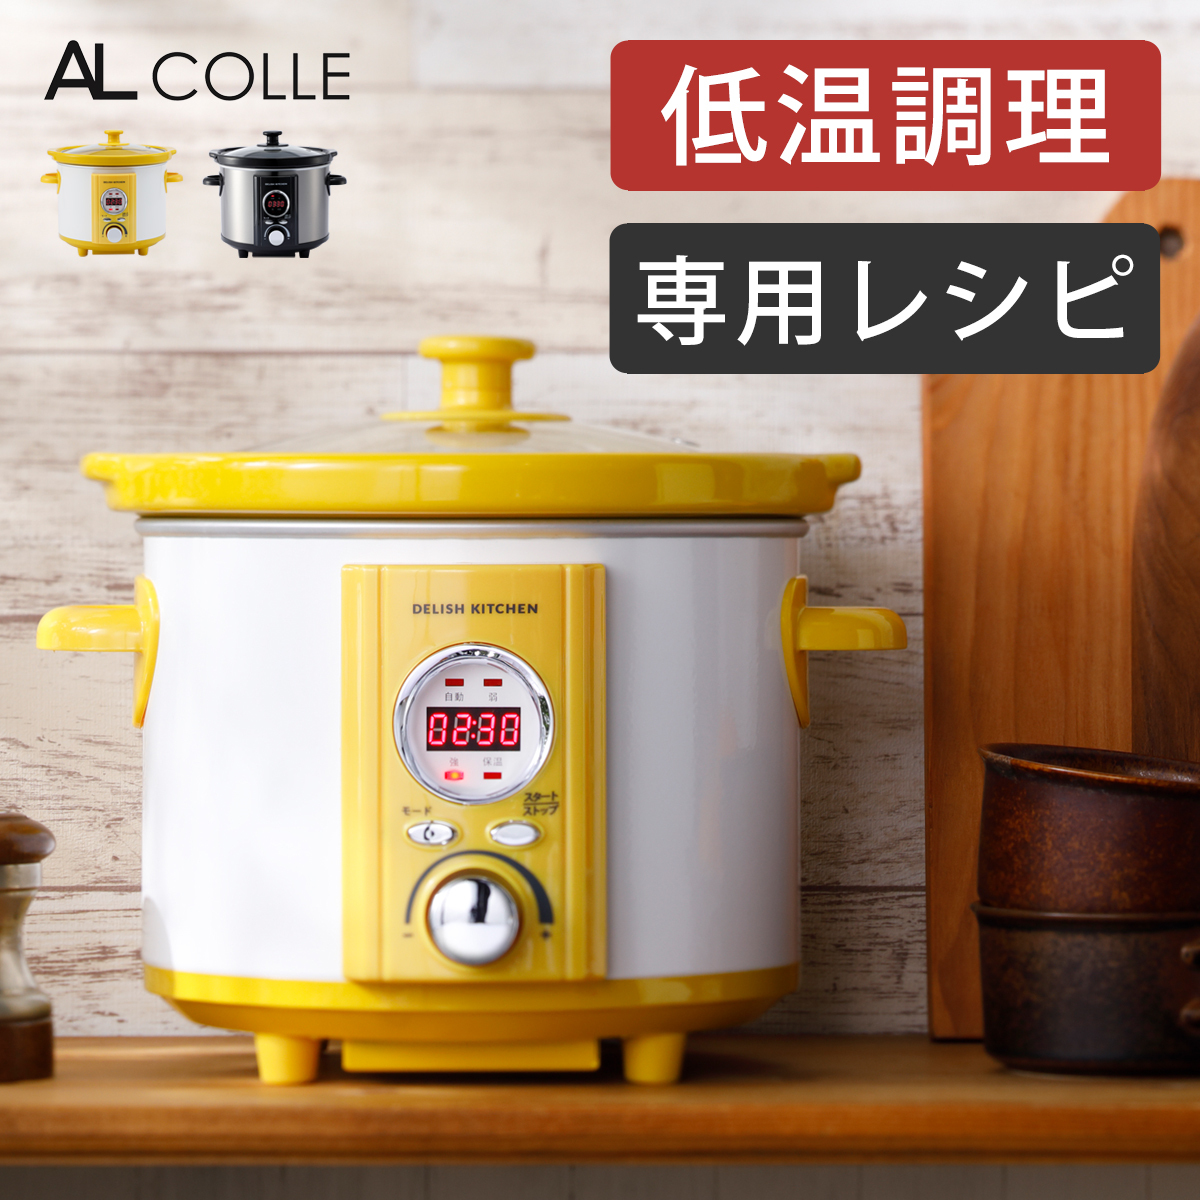 アルファックス・コイズミ デリッシュキッチン コトコト煮込みシェフ ASC-22D 電気圧力鍋の商品画像